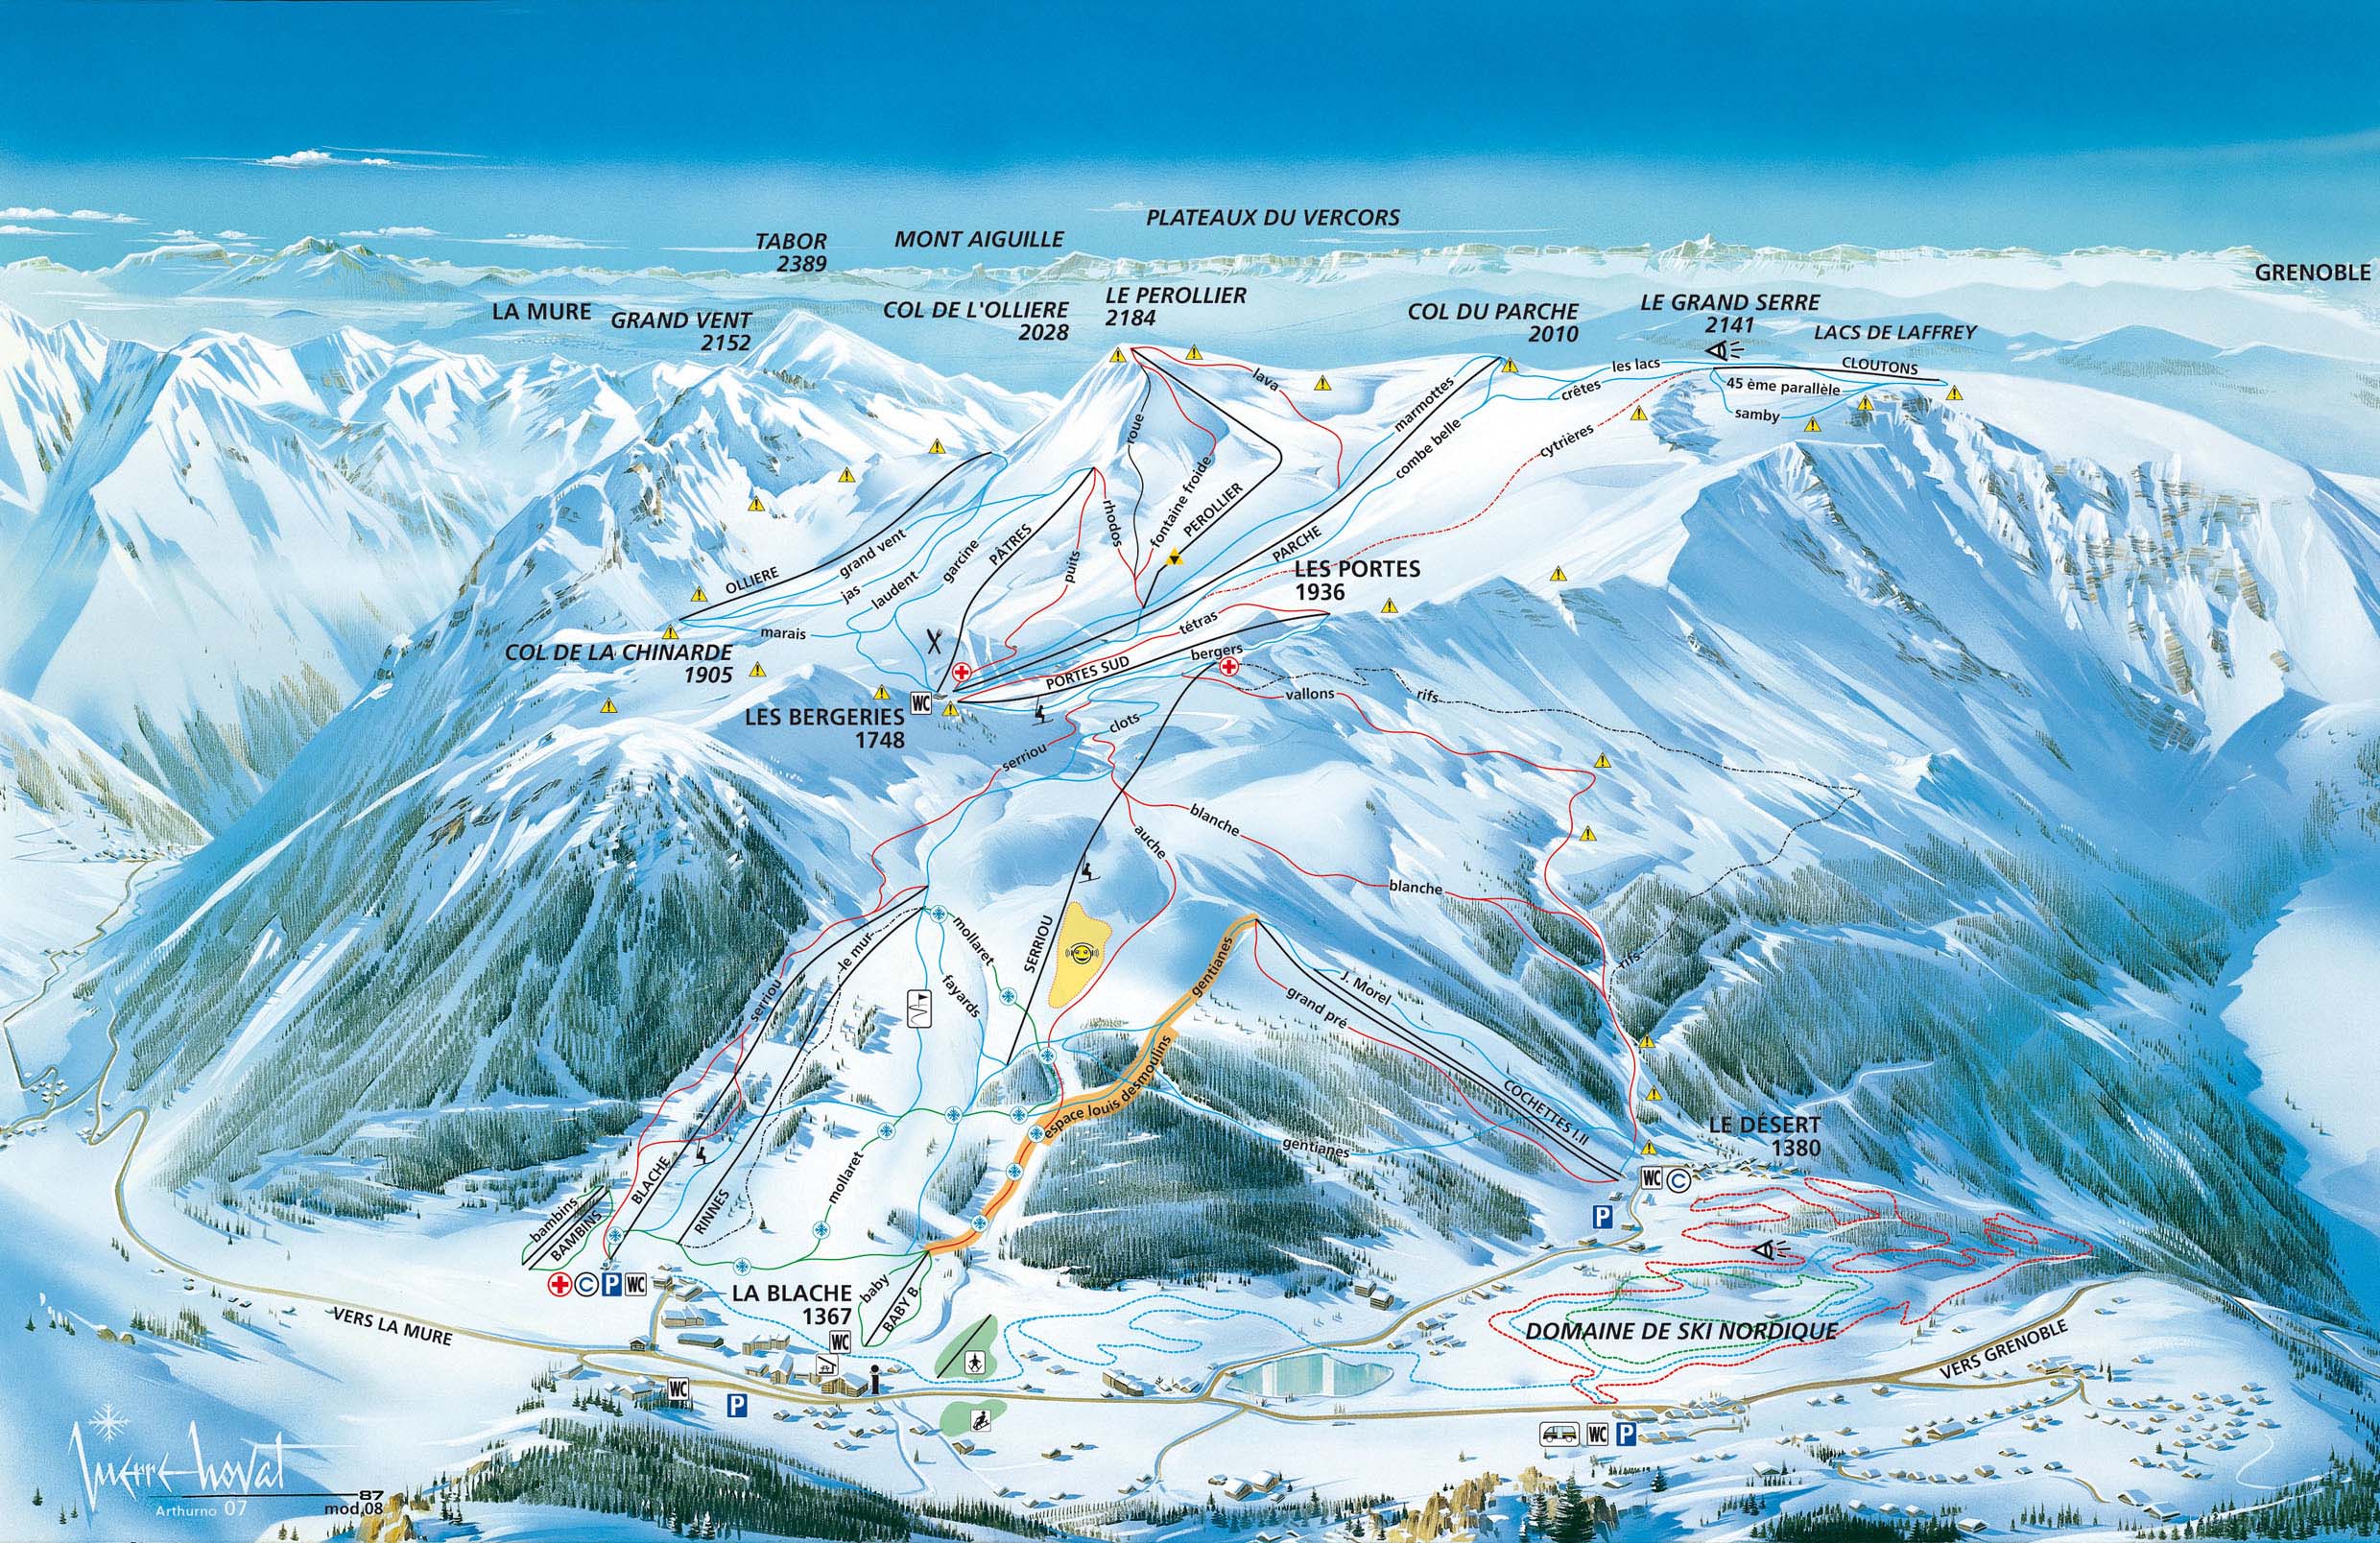 L'Alpe du grand serre